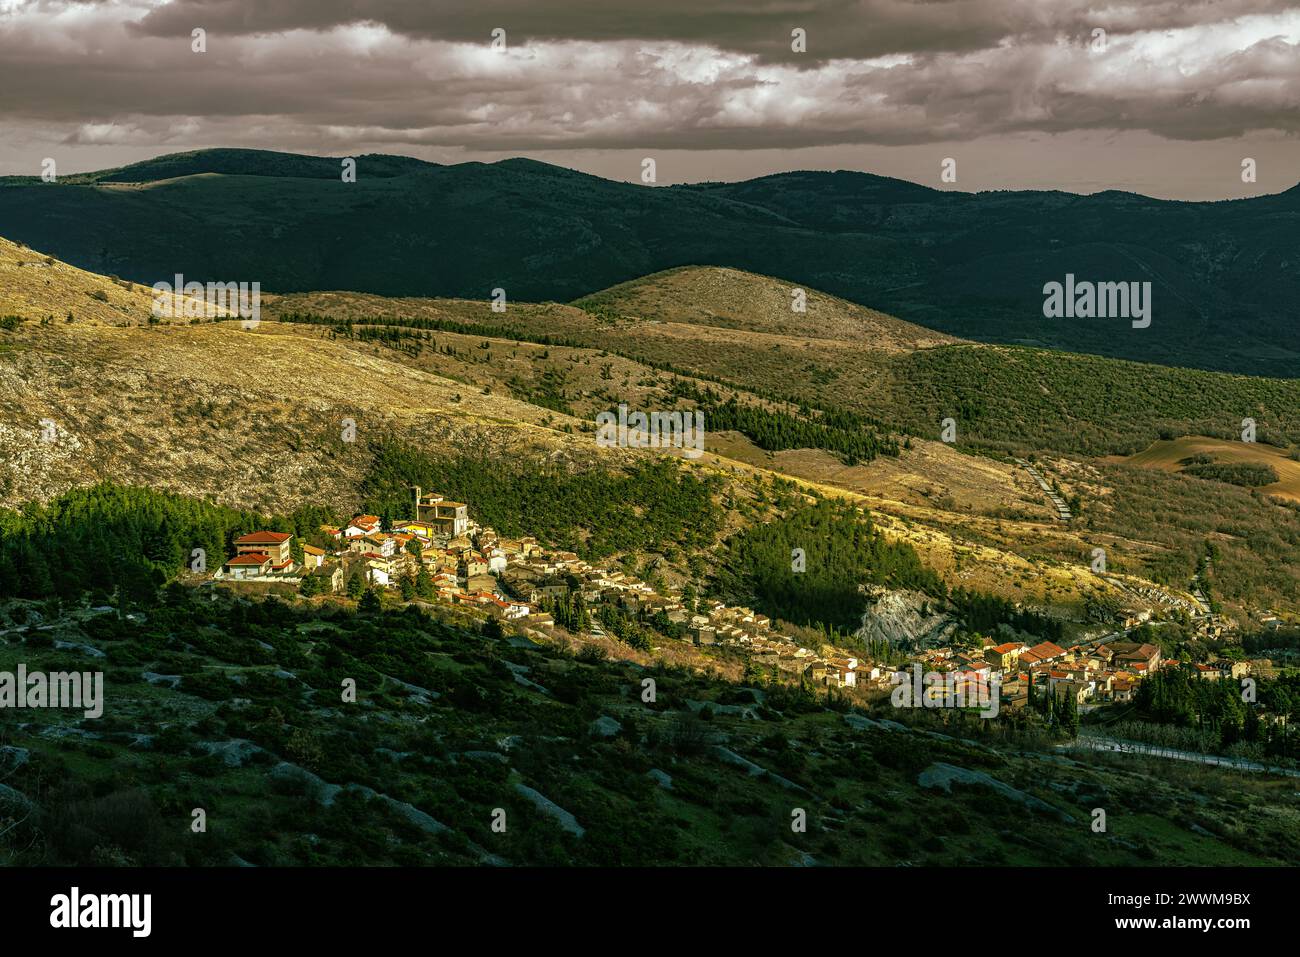 Sotto un cielo spettacolare, l'antica città di Secinaro e le montagne del Parco regionale del Sirente Velino. Secinaro, provincia dell'Aquila, Abruzzo Foto Stock